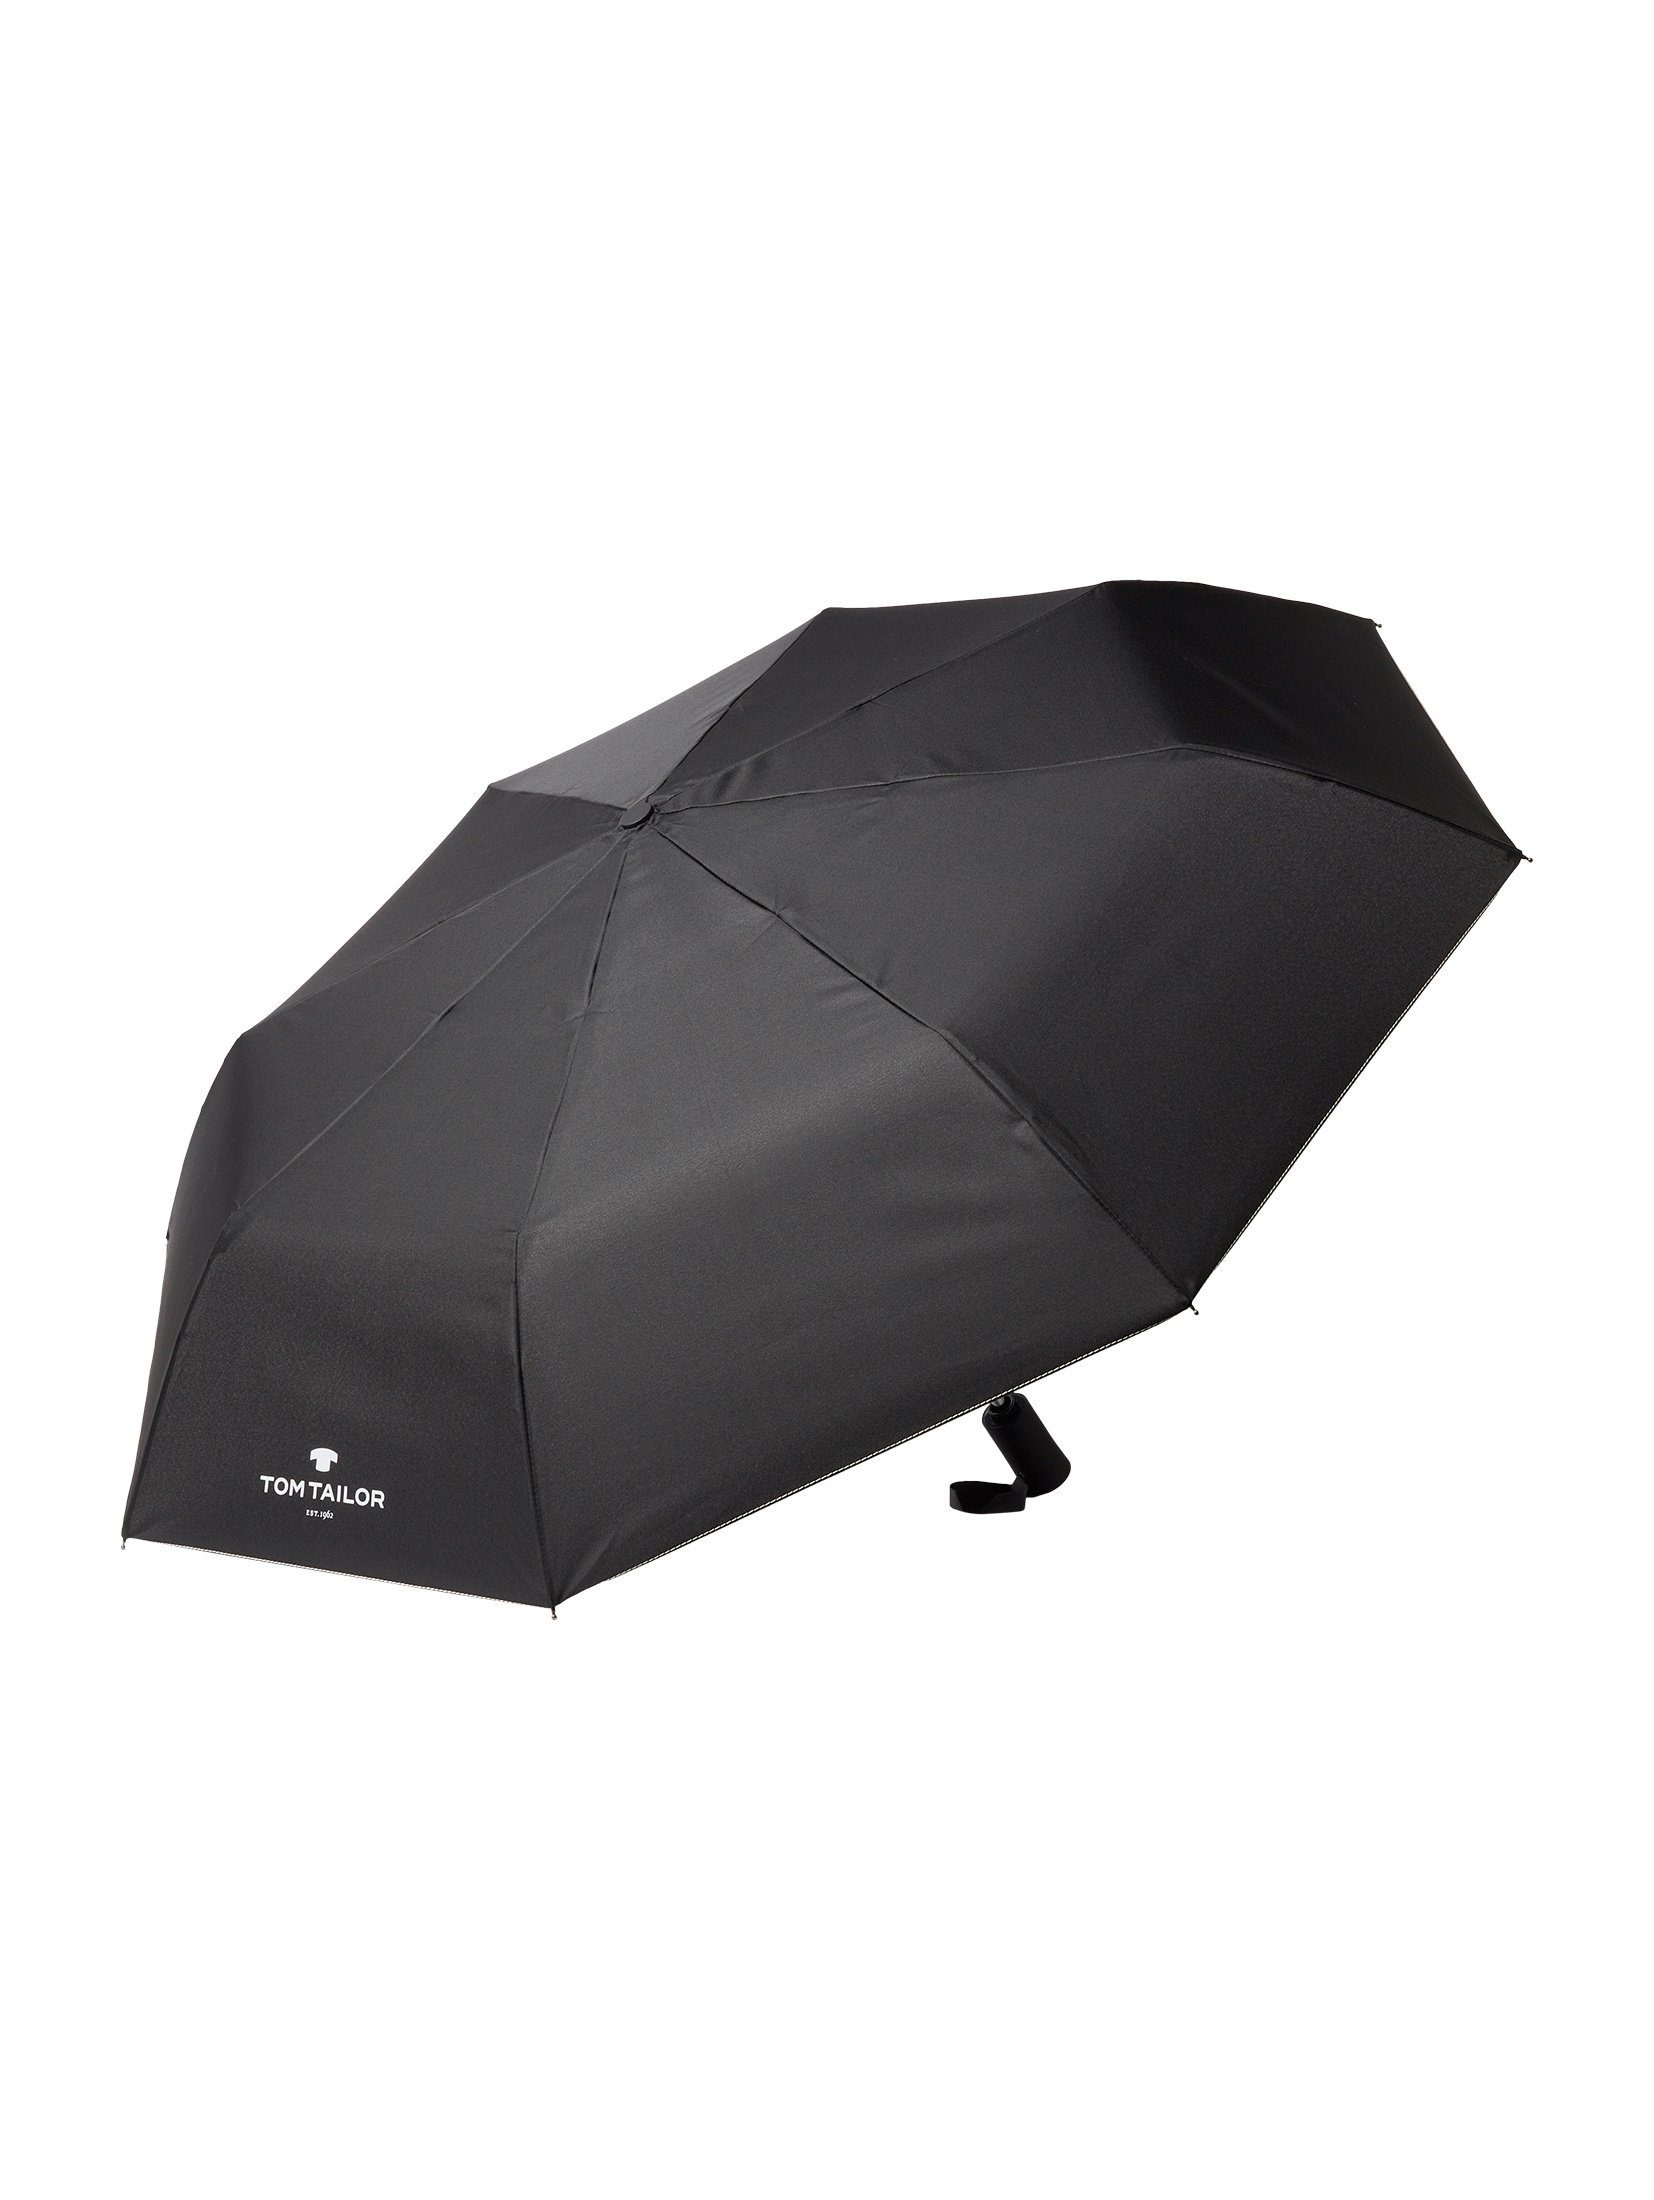 TOM TAILOR Taschenregenschirm Regenschirm Automatik black Kleiner